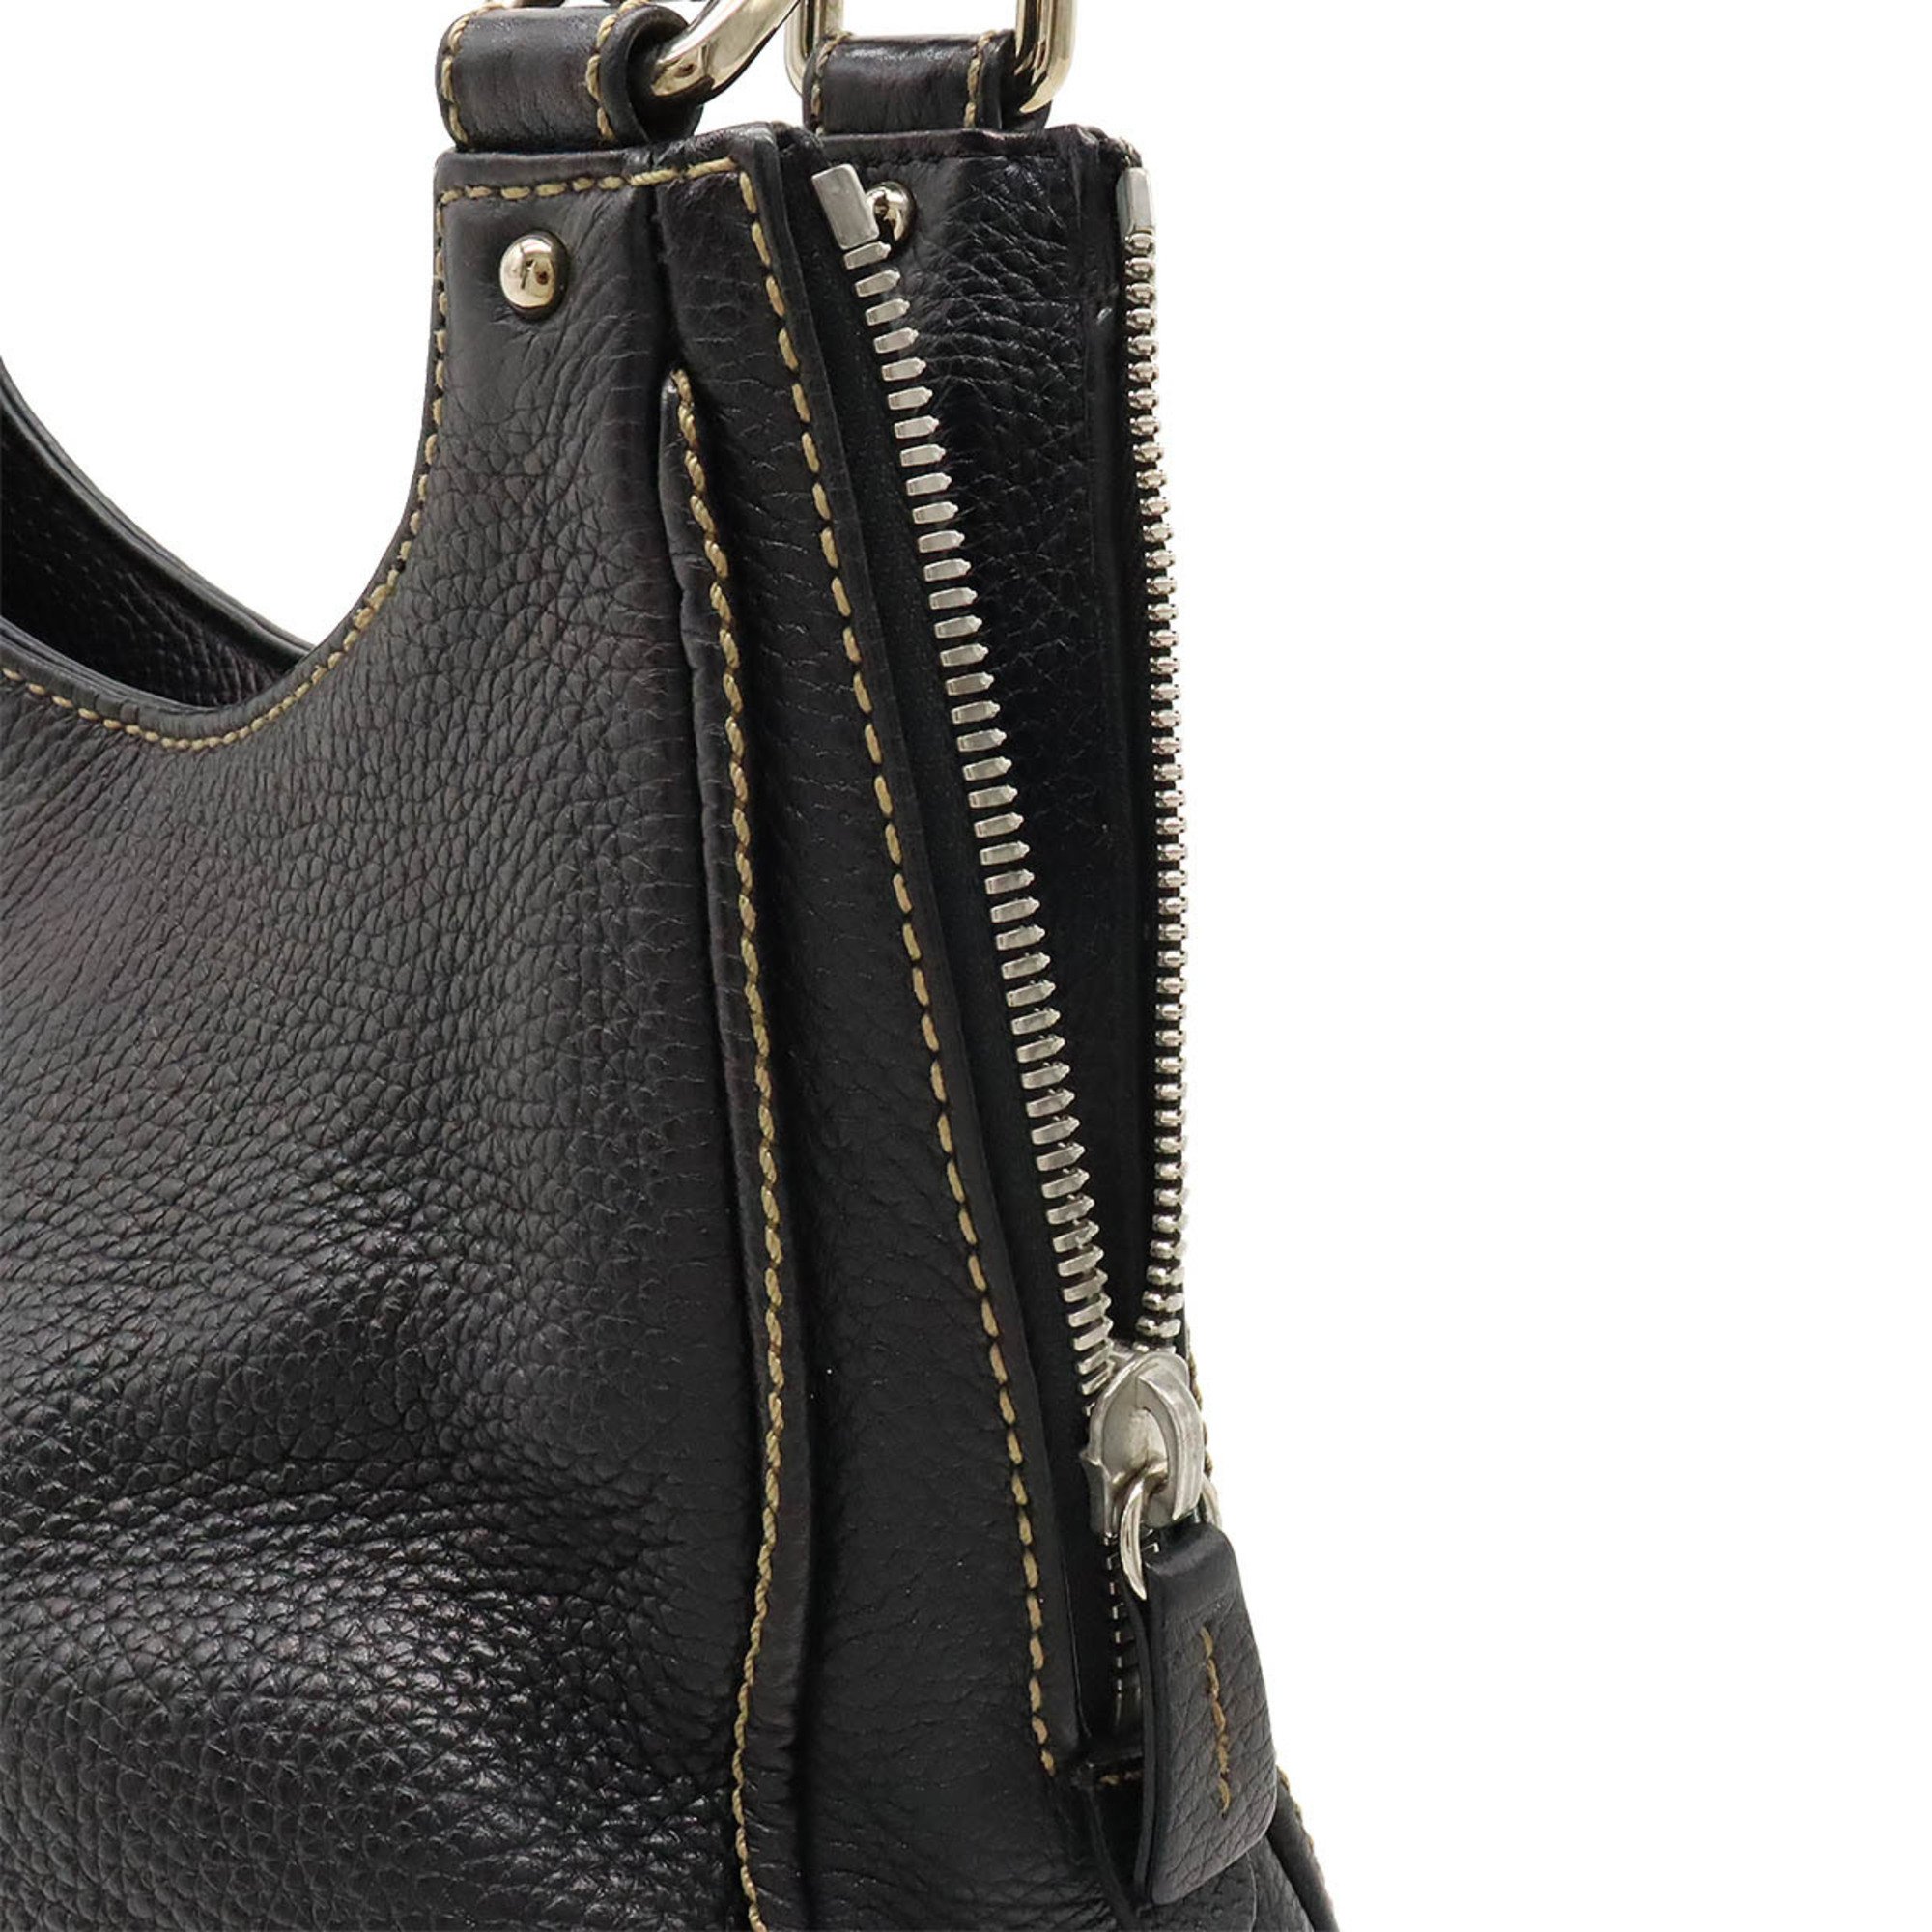 CHANEL Tassel Handbag Shoulder Bag Leather Black A23055